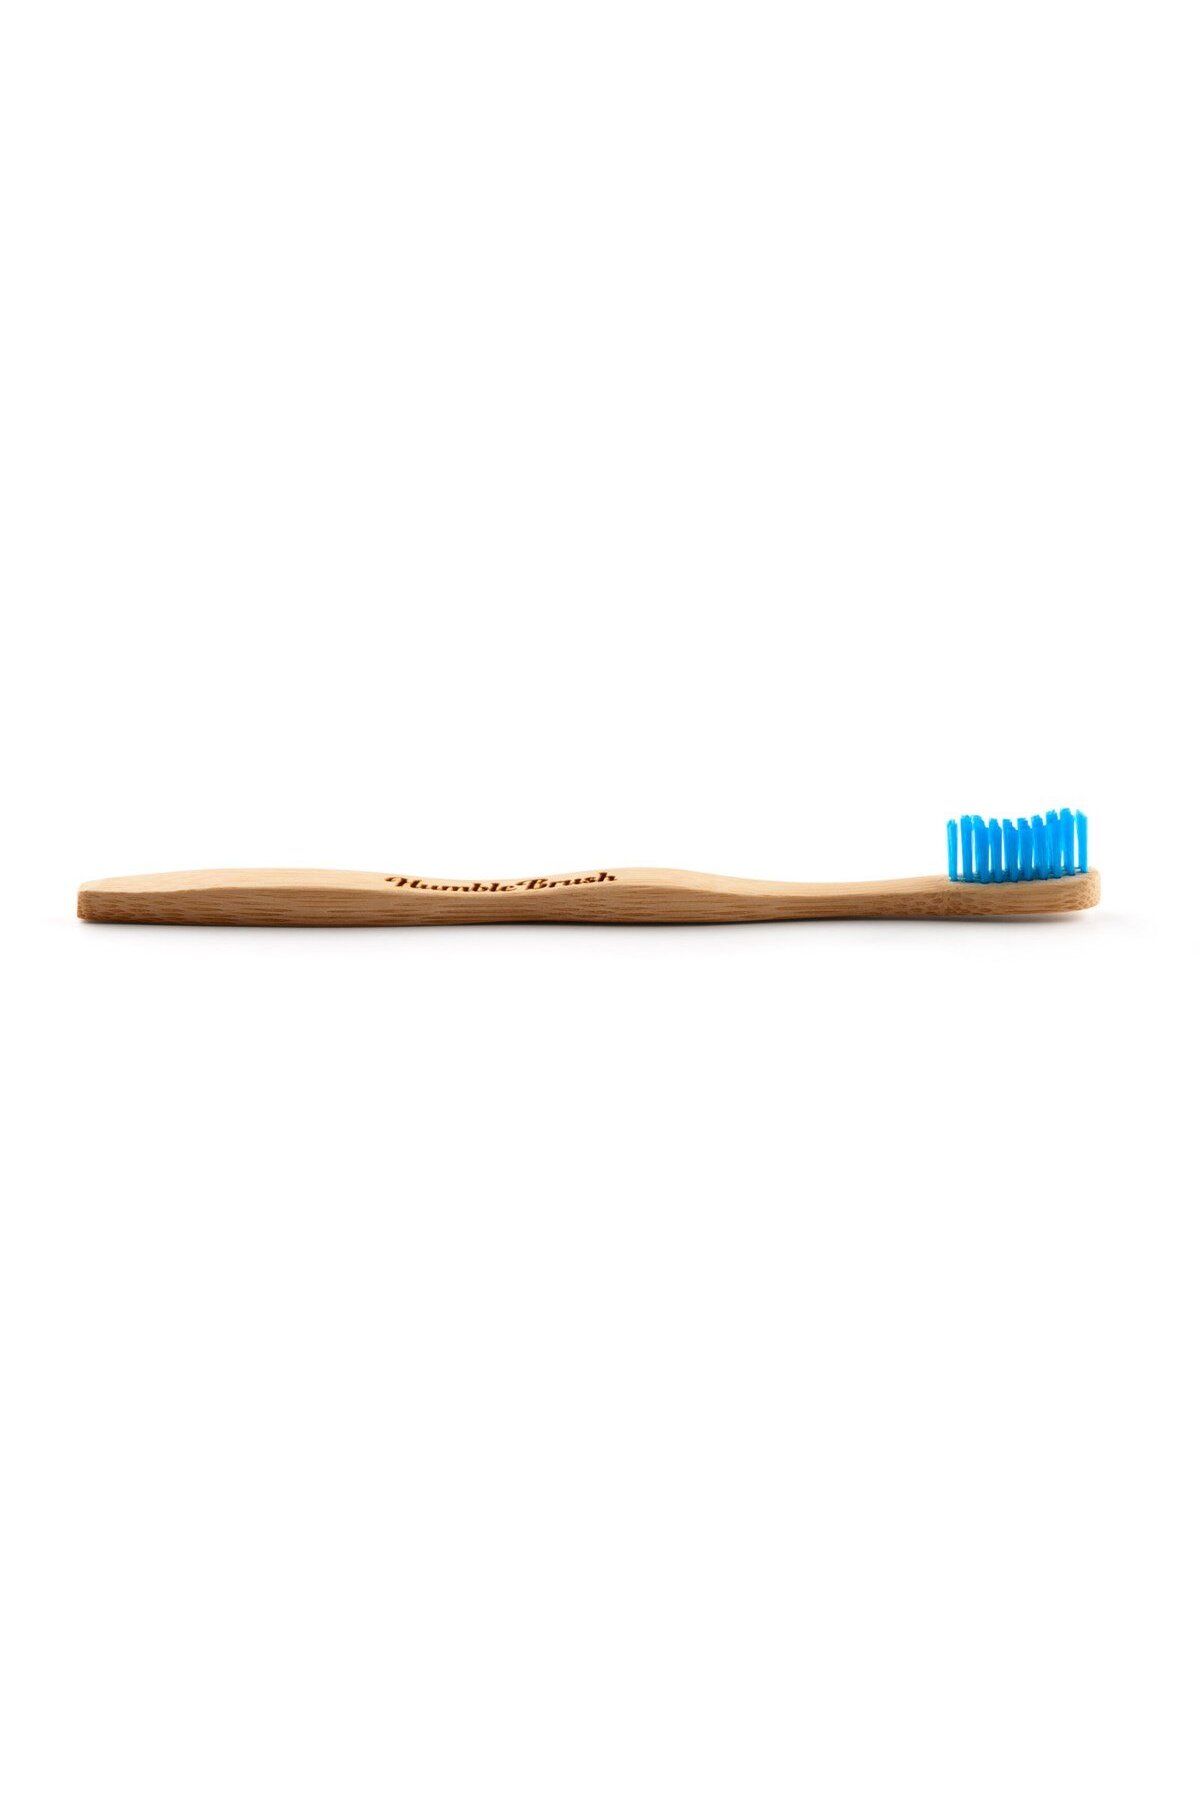 Humble Brush Yumuşak Diş Fırçası - Mavi